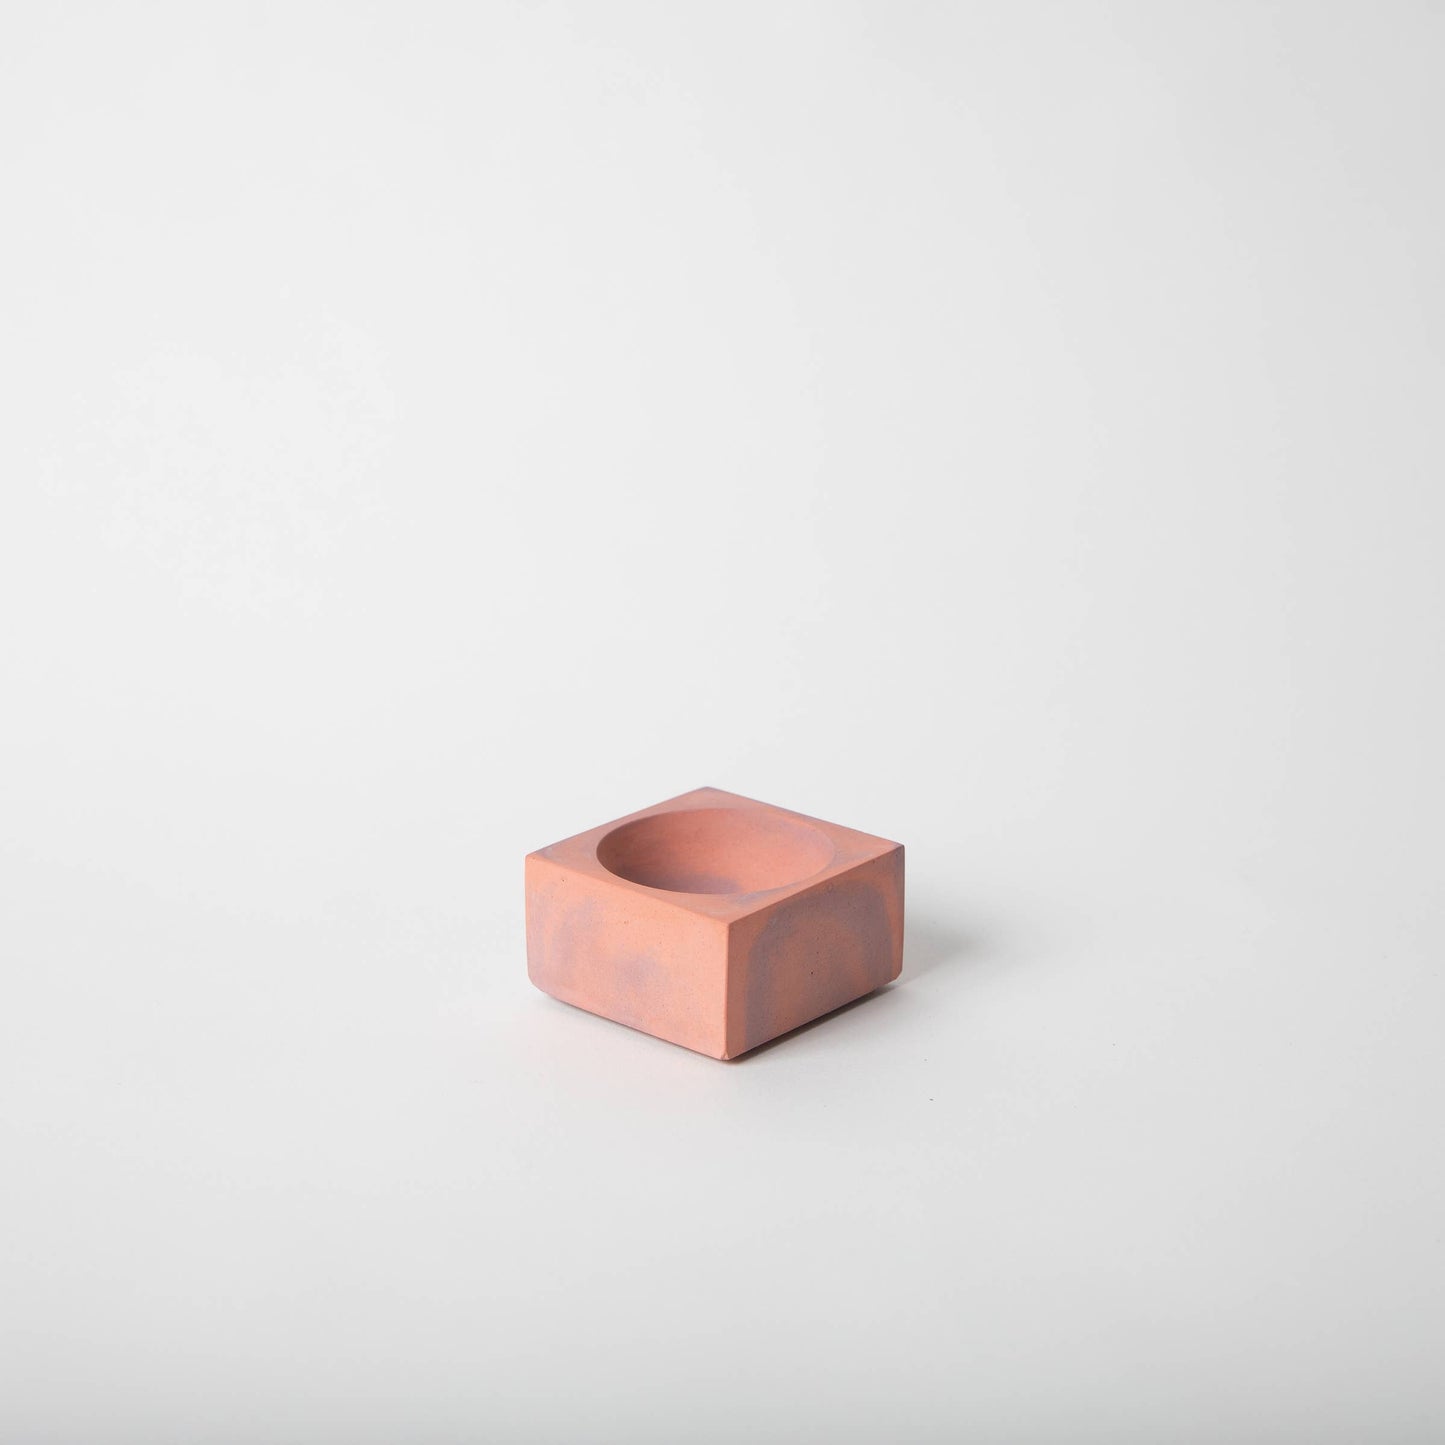 pretti.cool - Incense Holder (Square) - Marbled Concrete